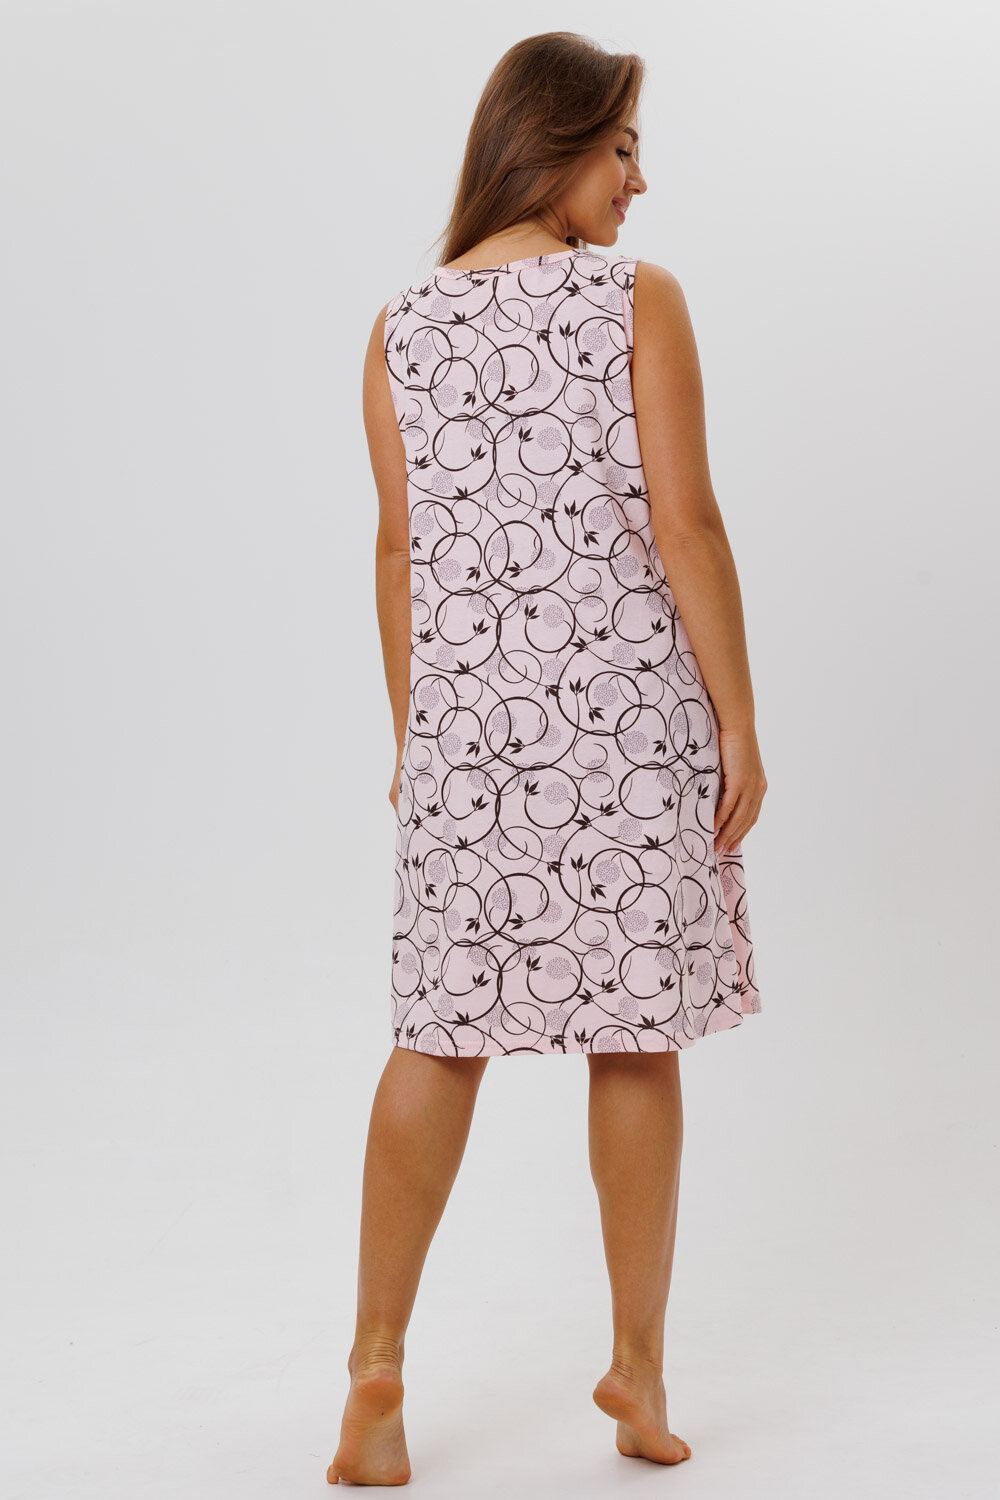 Сорочка Modellini средней длины, без рукава, размер 52, розовый - фотография № 9